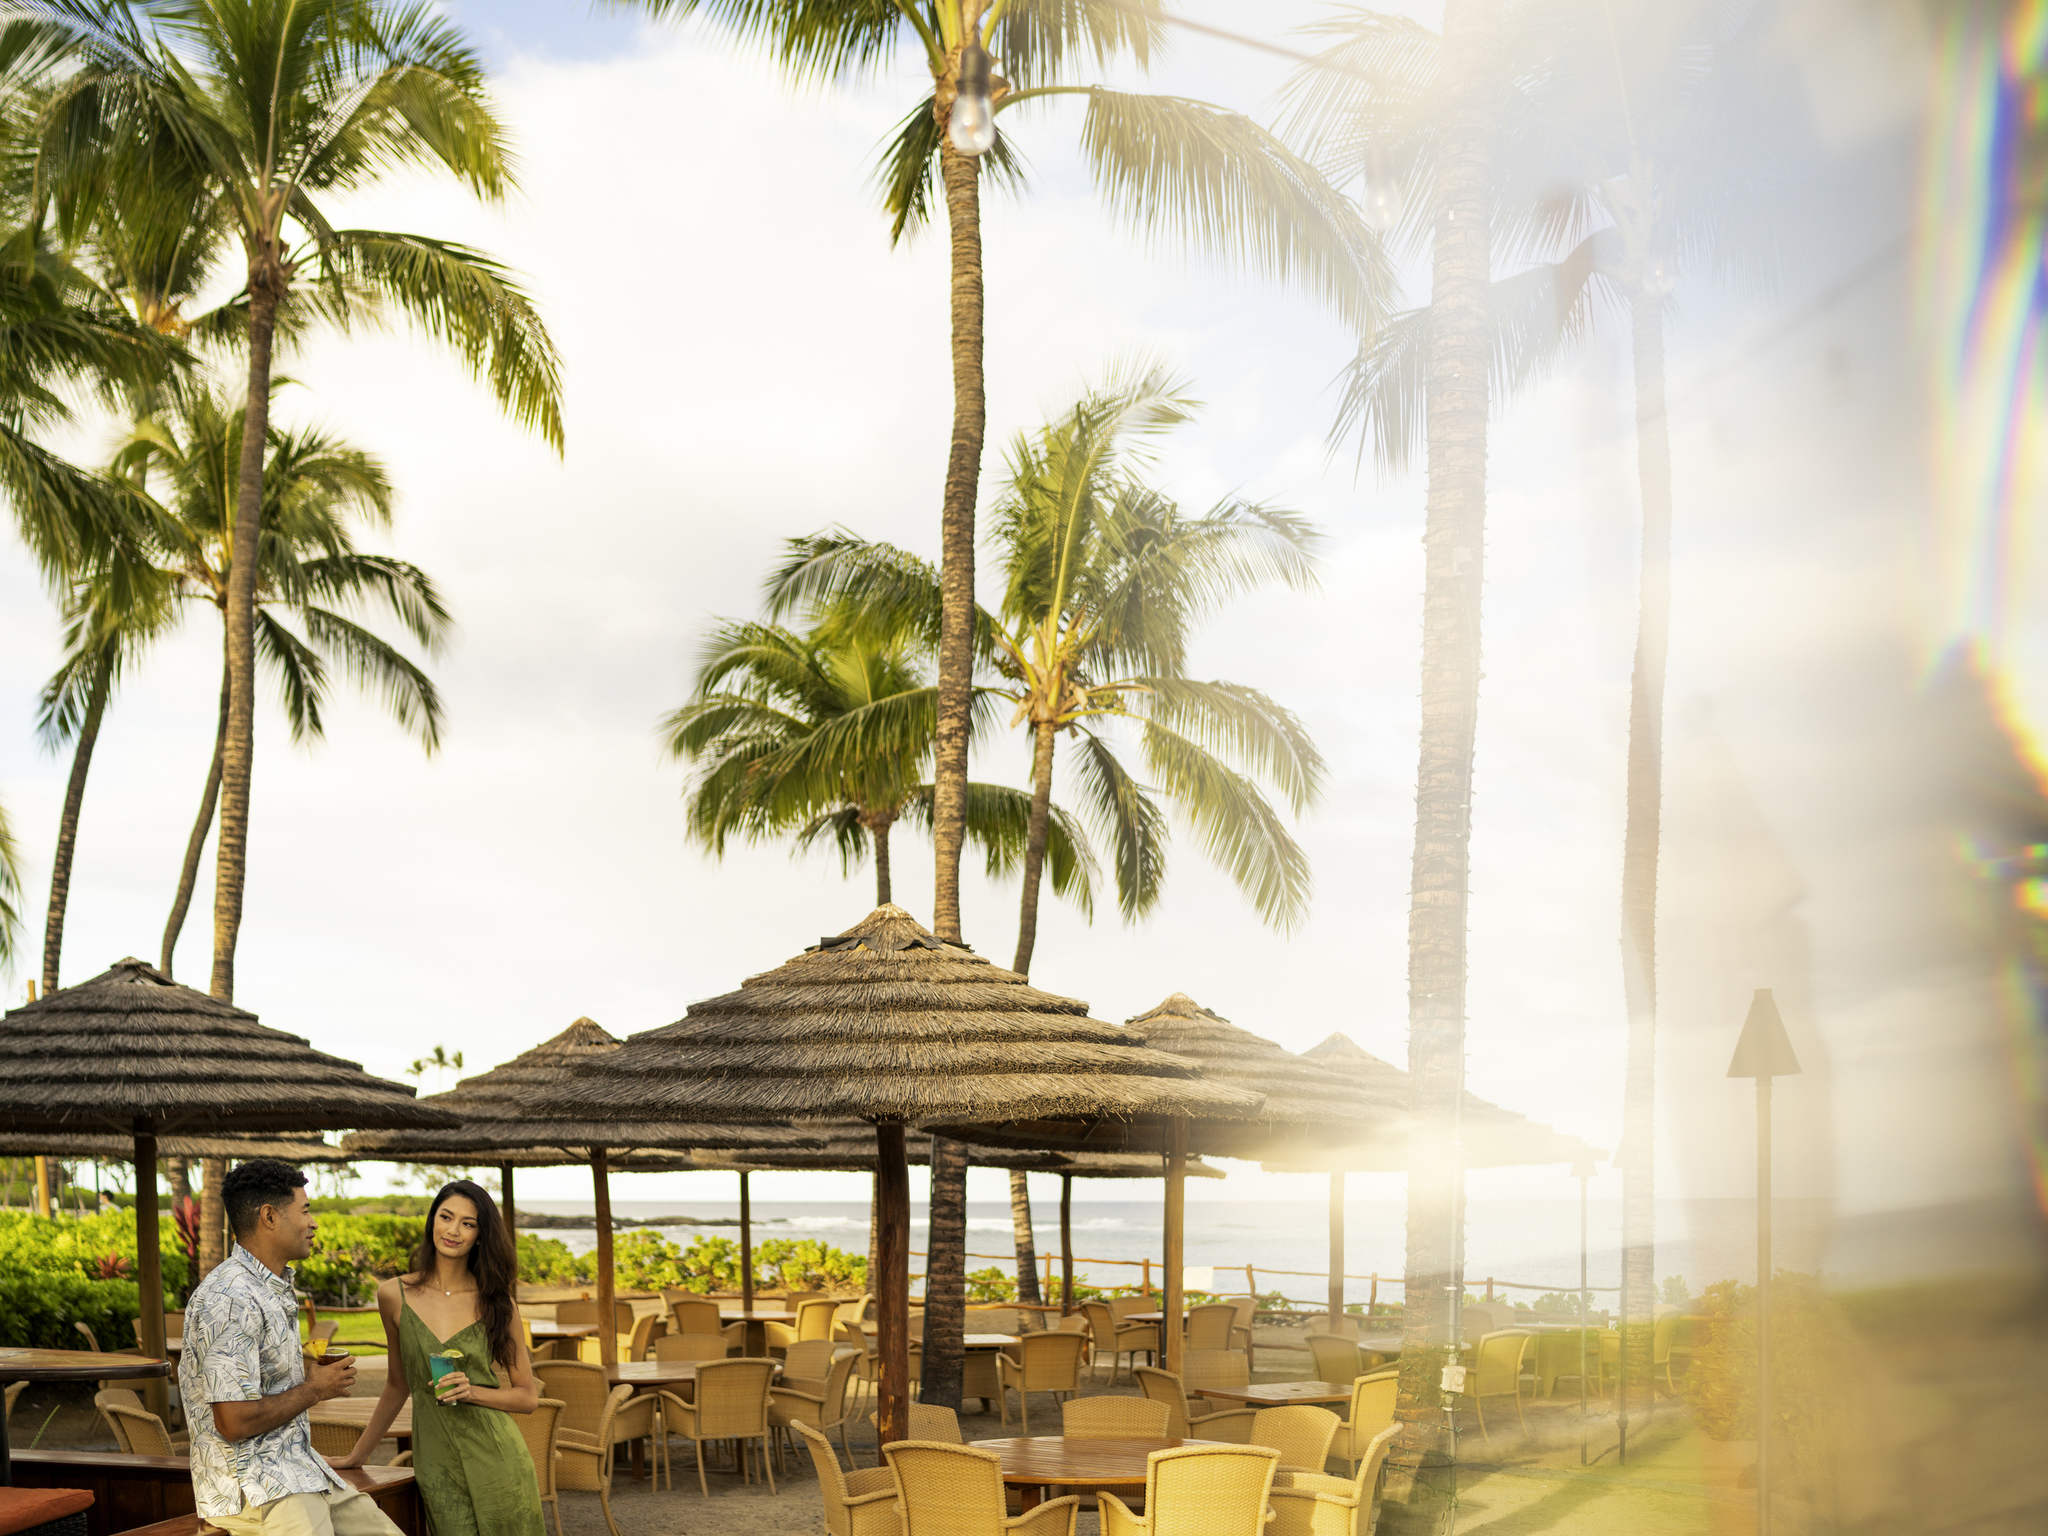 Hotel in HAWAII - Fairmont Orchid, Hawaii